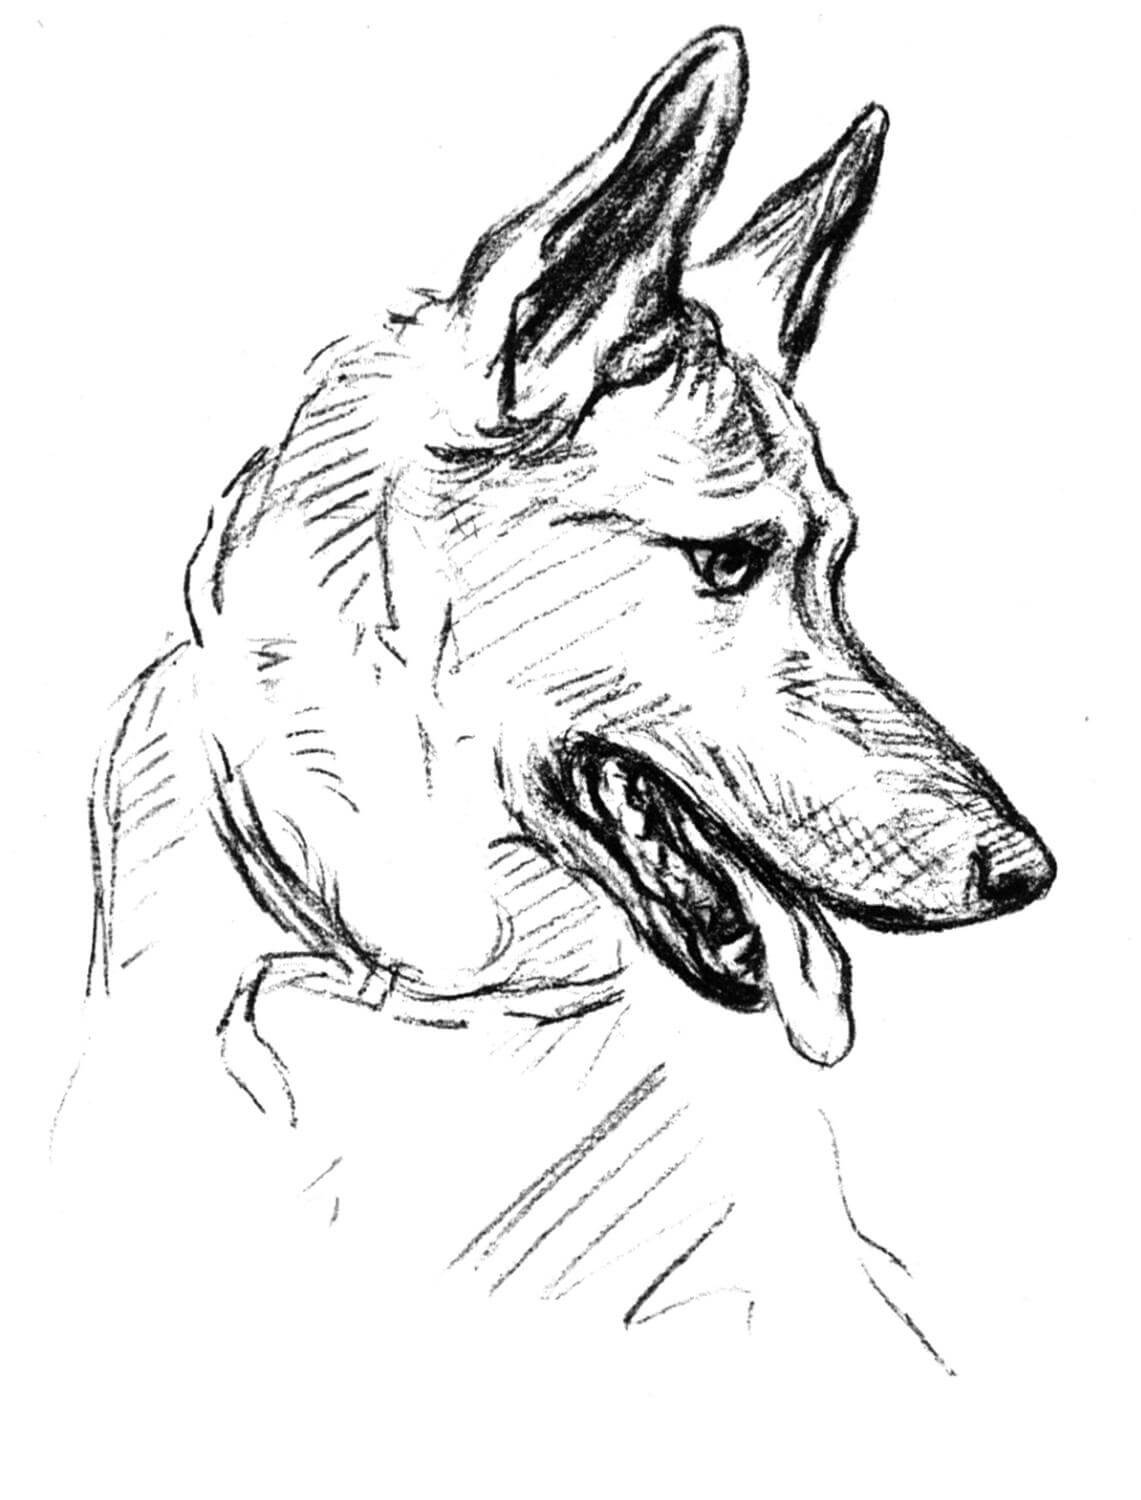 German Shepherd Art from Dogs